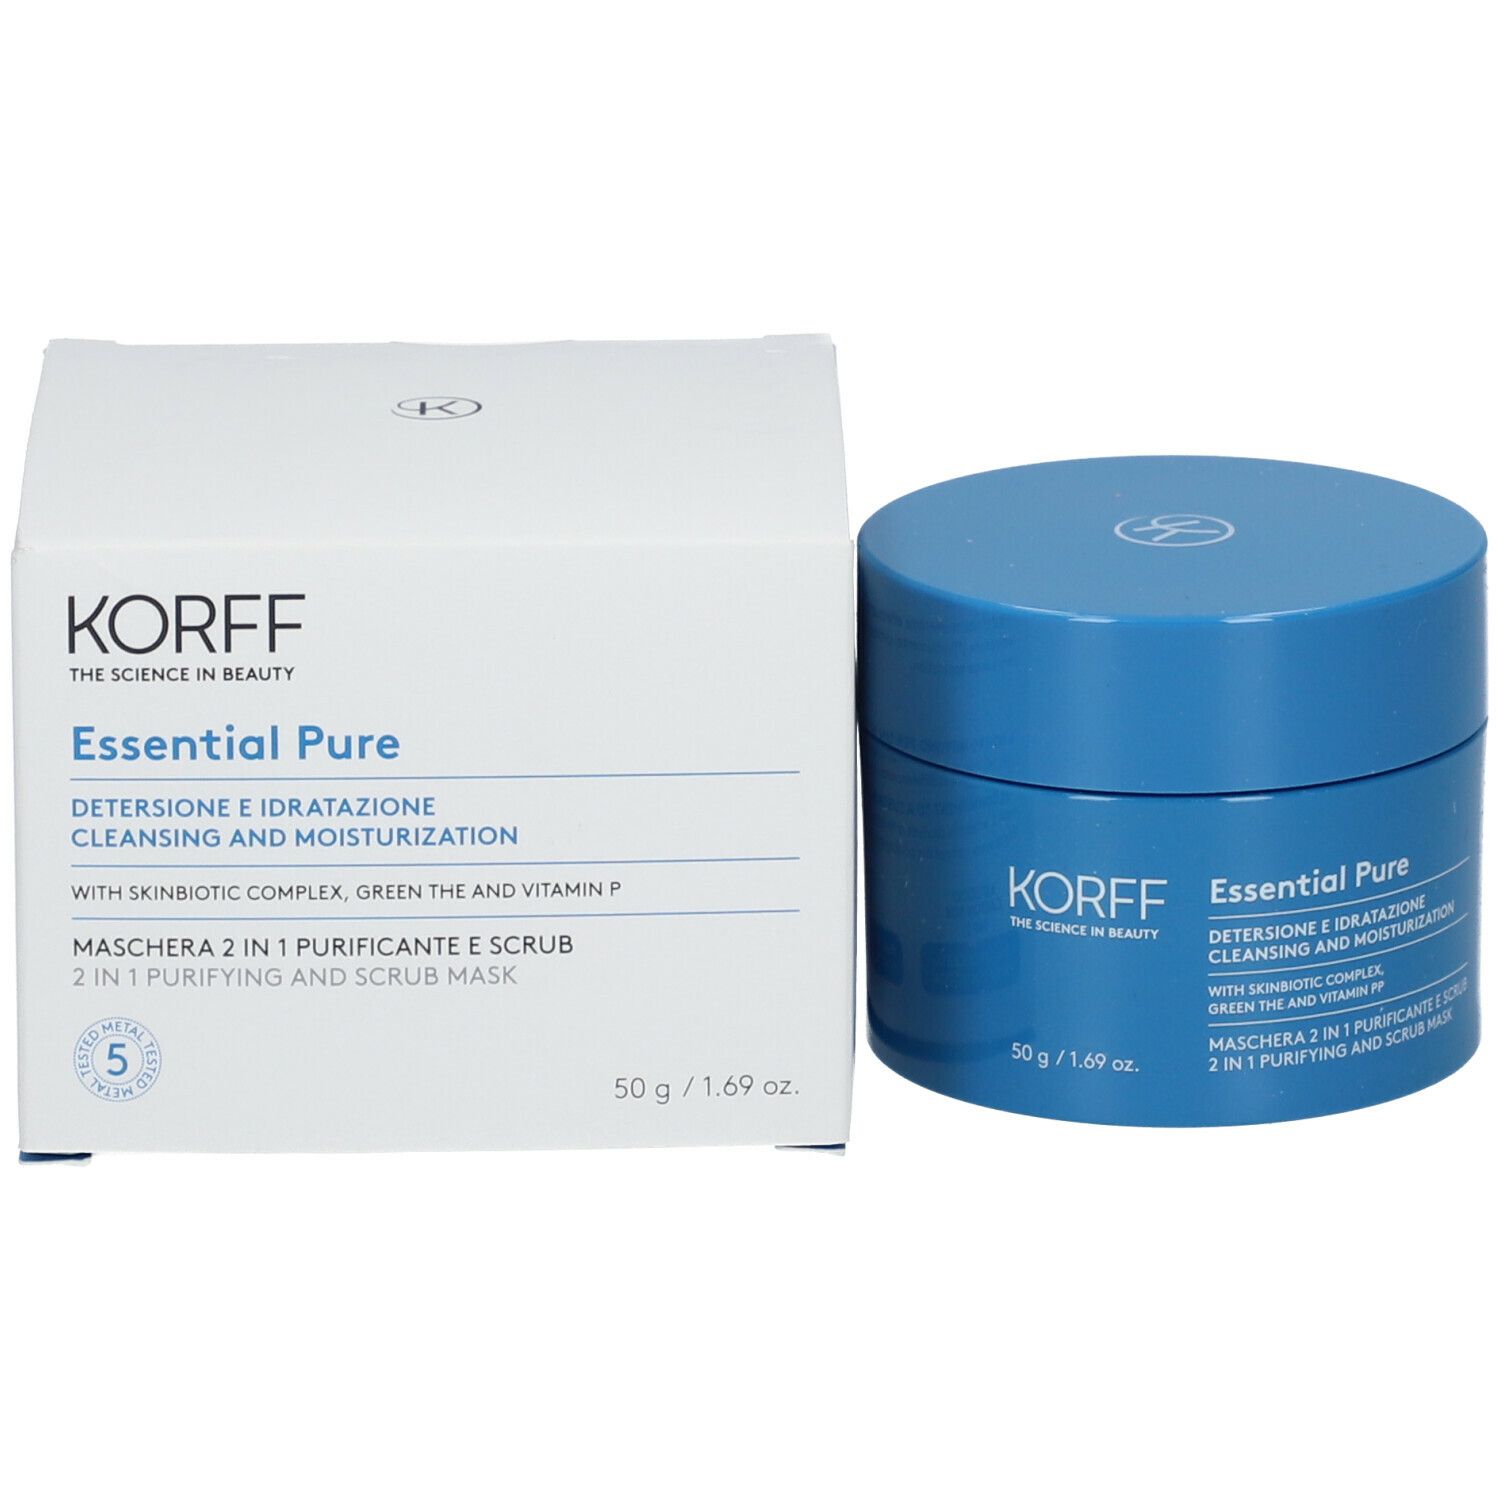 KORFF Essential Pure Maschera 2 In 1 Purificante E Scrub